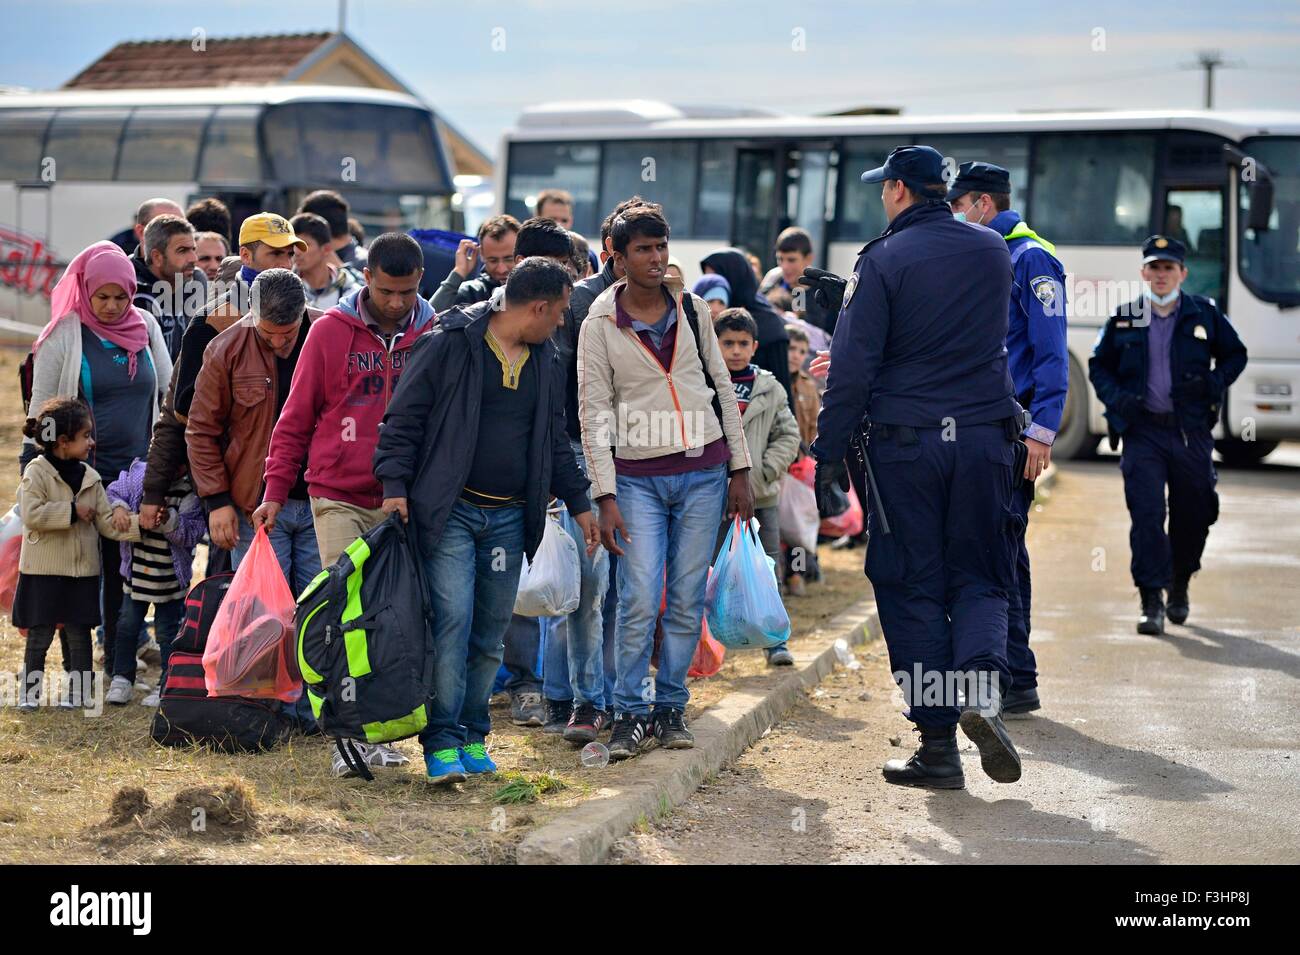 Ottobre 5, 2015; Tovarnik in Croazia. Polizia croata assistere i rifugiati arrivare in treno che andrà in Ungheria. Foto Stock